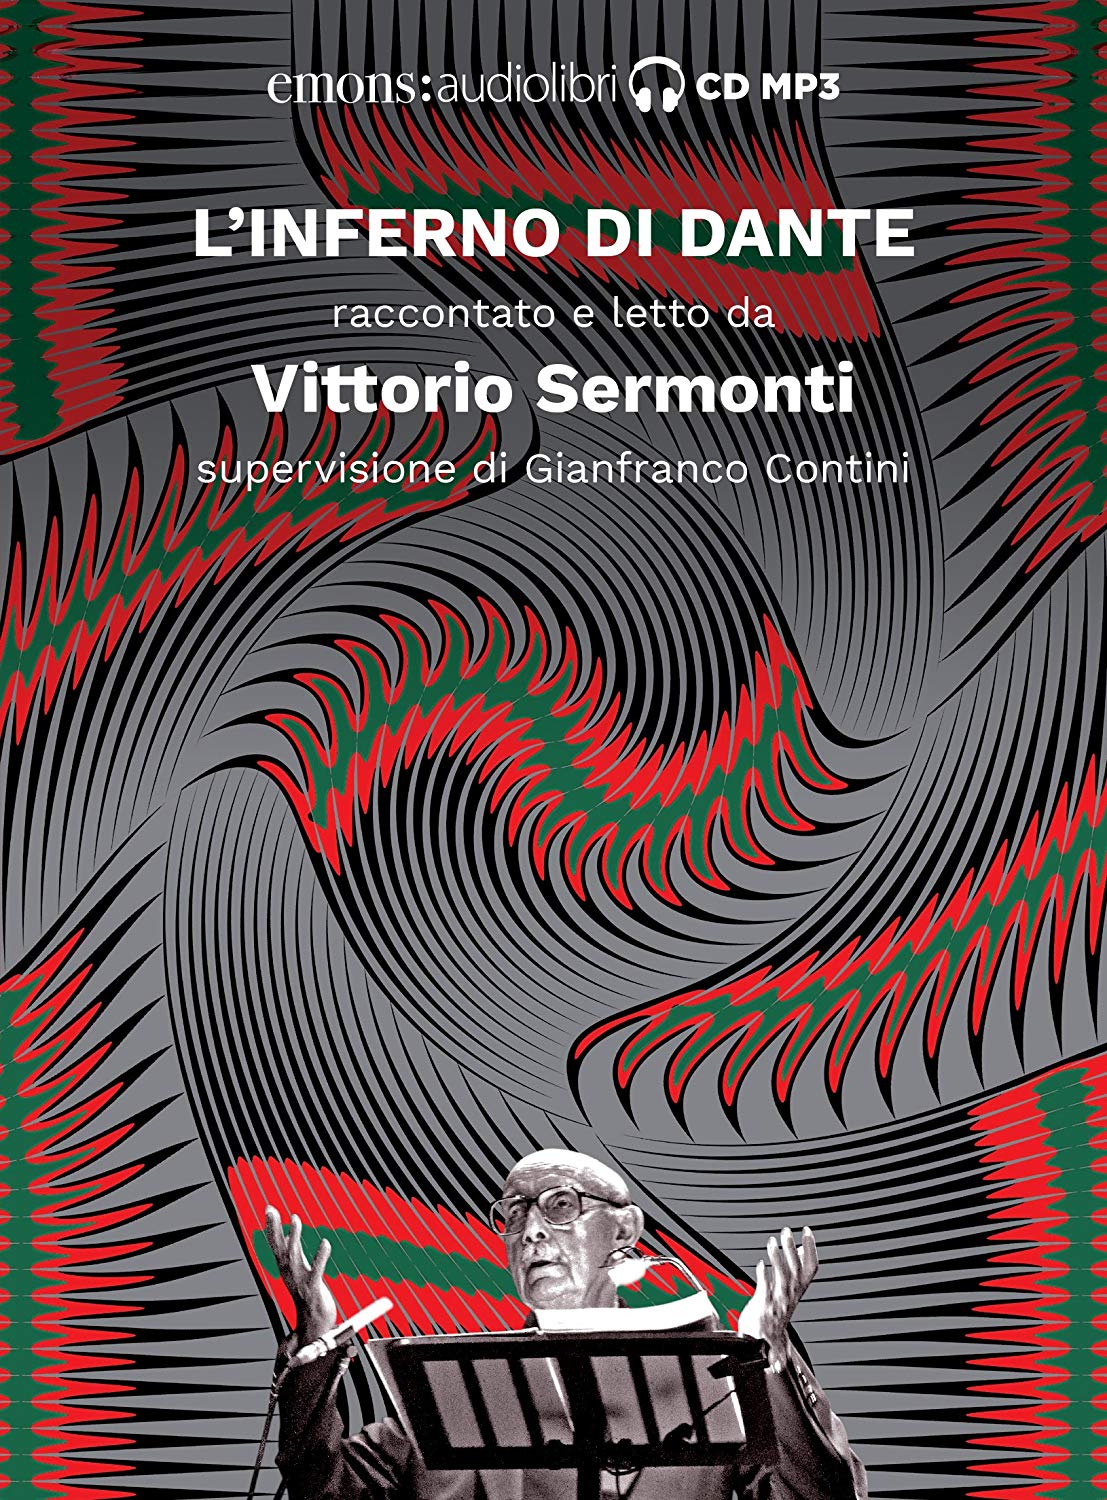 Audiolibro Dante Alighieri - Alighieri, Dante (Audiolibro) NUOVO SIGILLATO, EDIZIONE DEL 05/03/2018 SUBITO DISPONIBILE